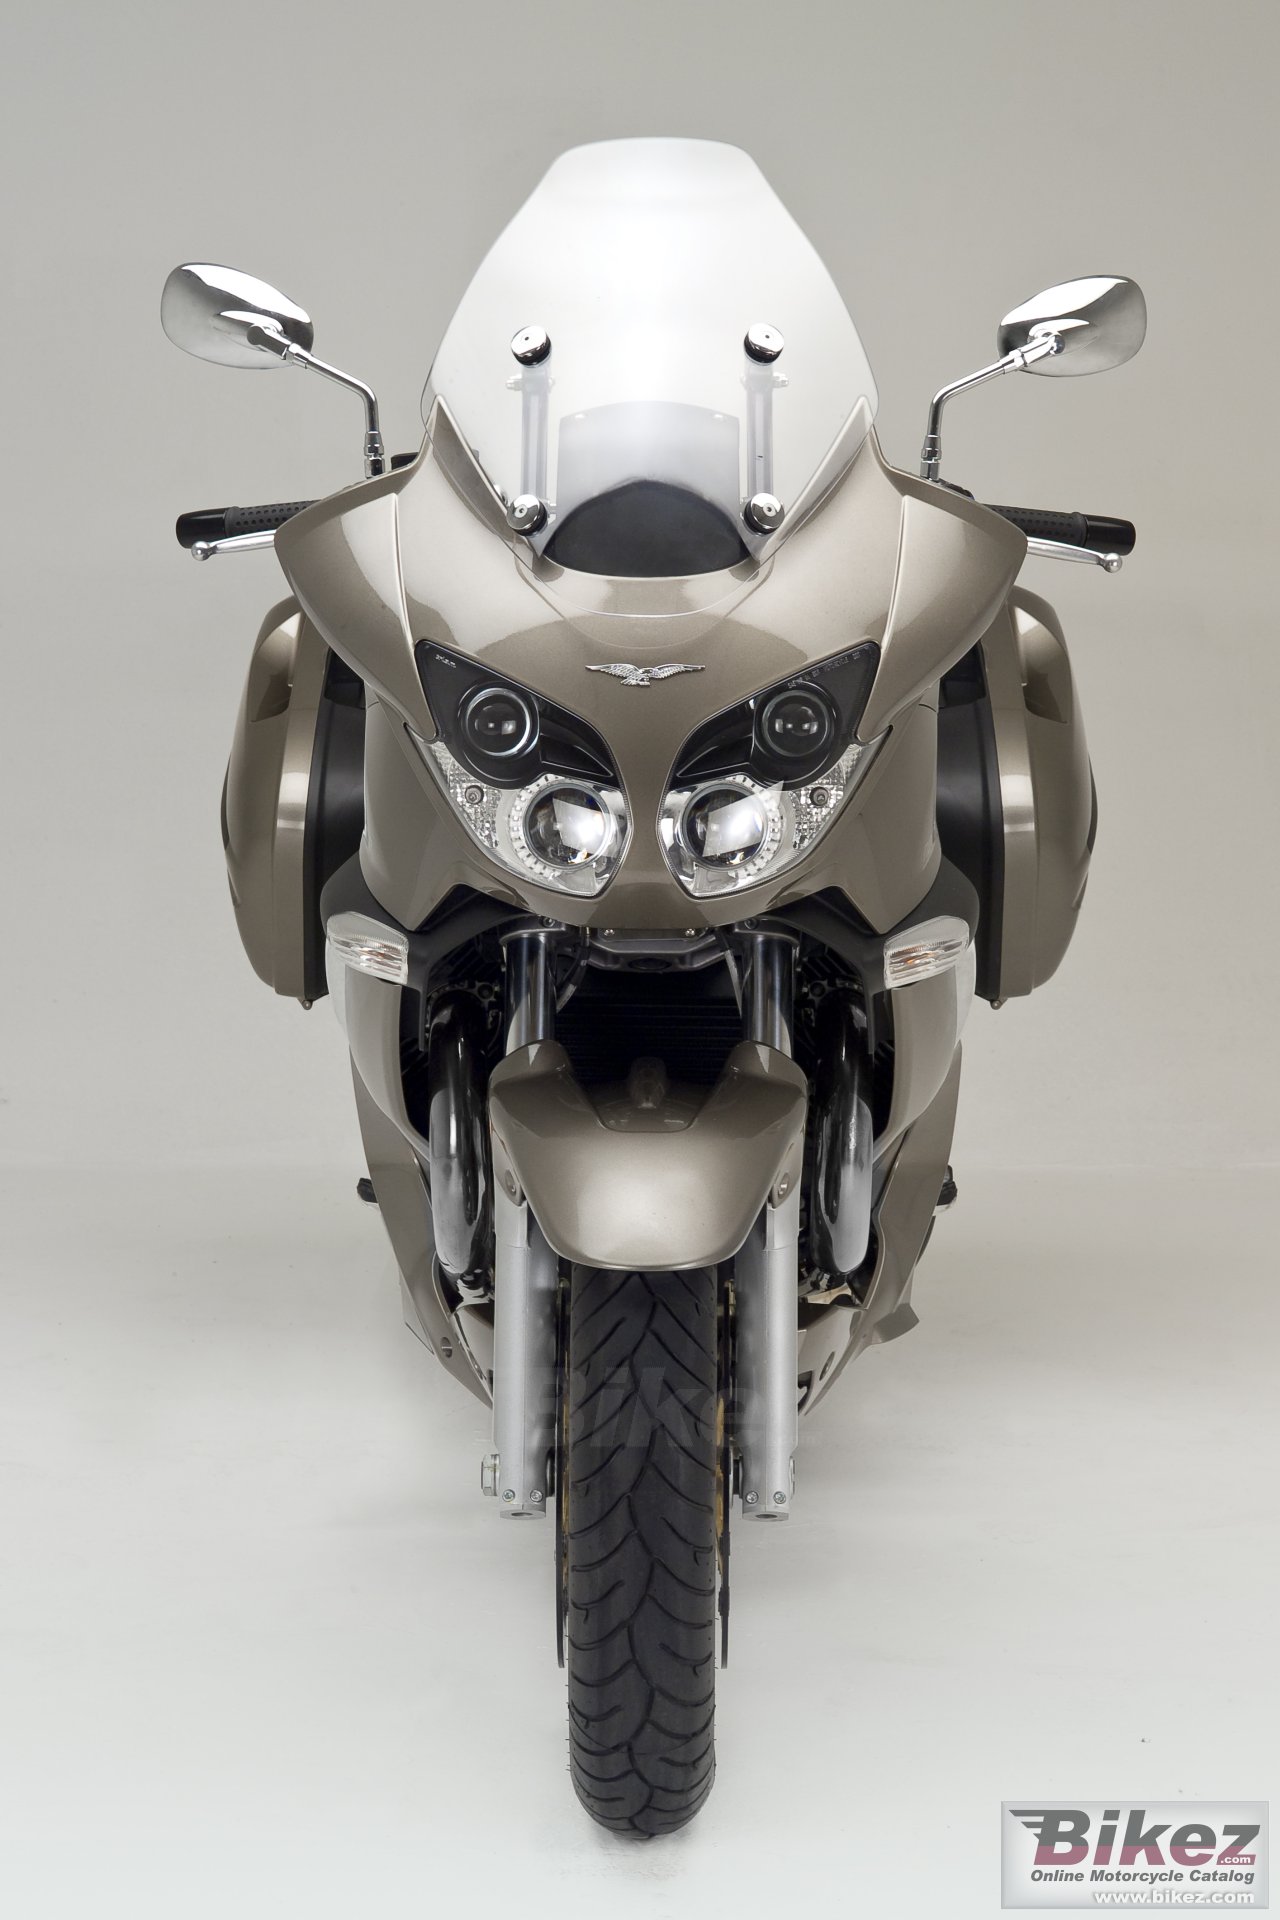 Moto Guzzi Norge 1200 TL